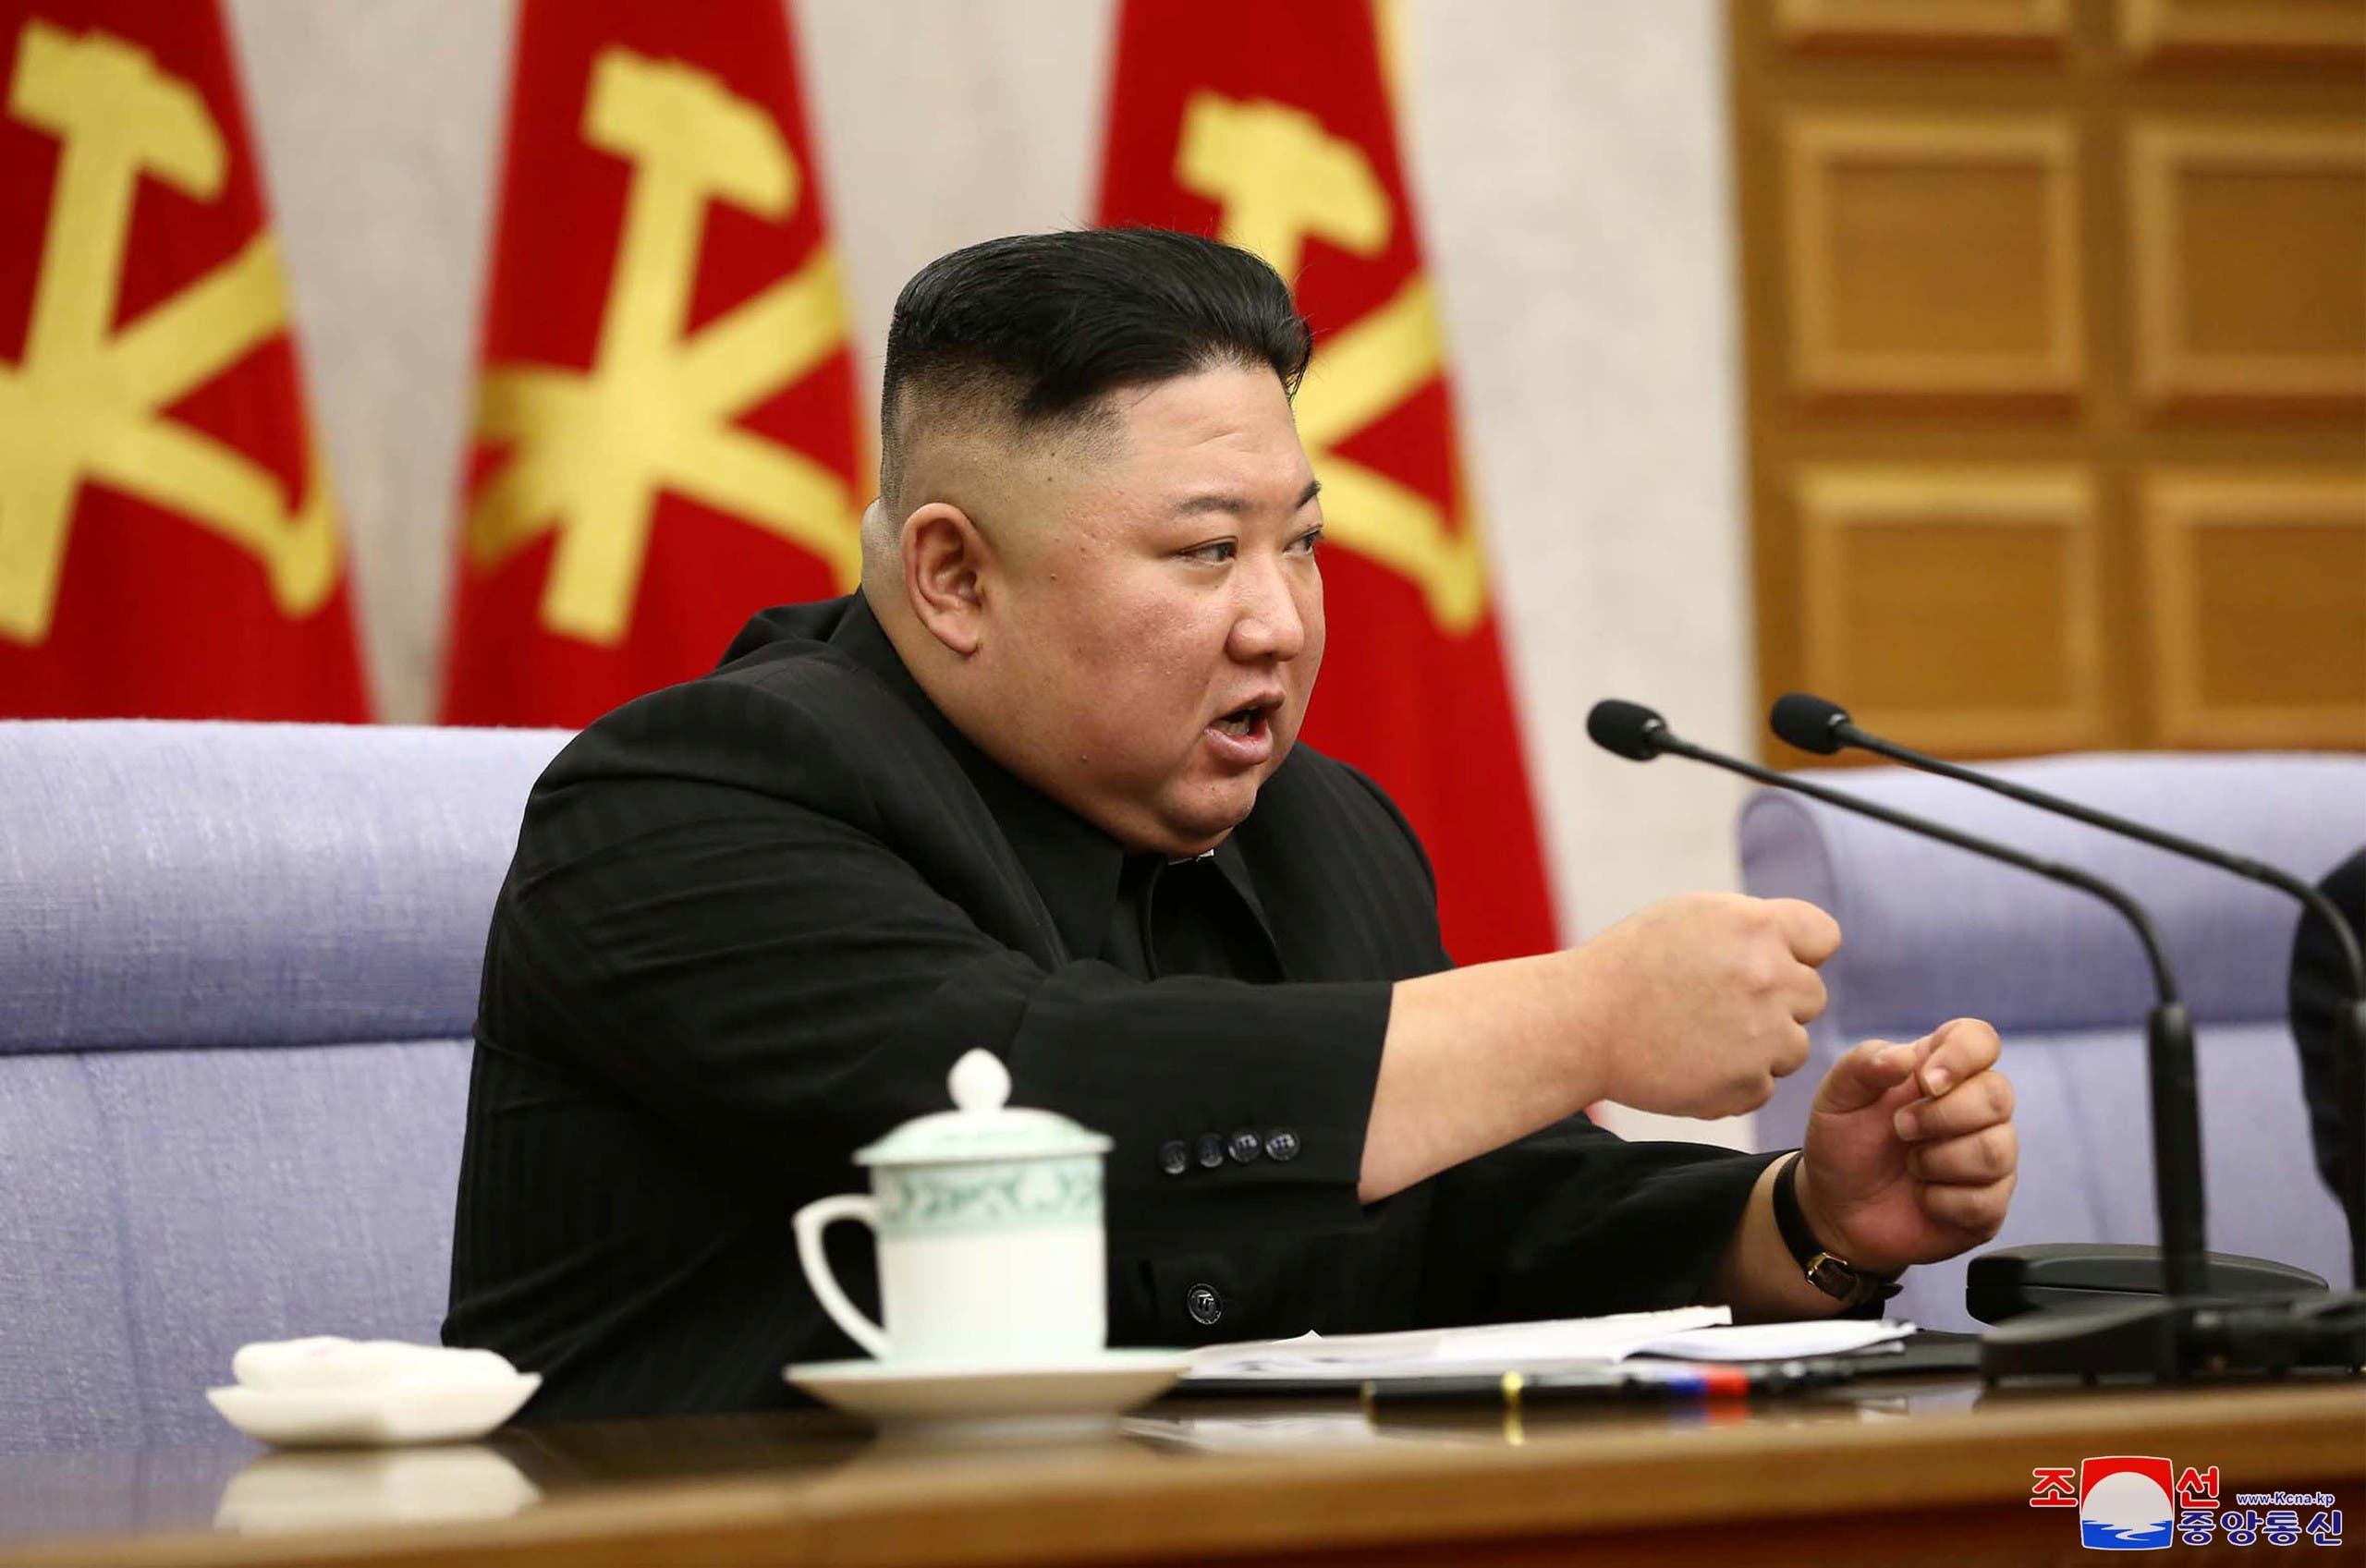 زعيم كوريا الشمالية كيم جونغ أون خلال اجتماع لحزبه في 8 فبراير